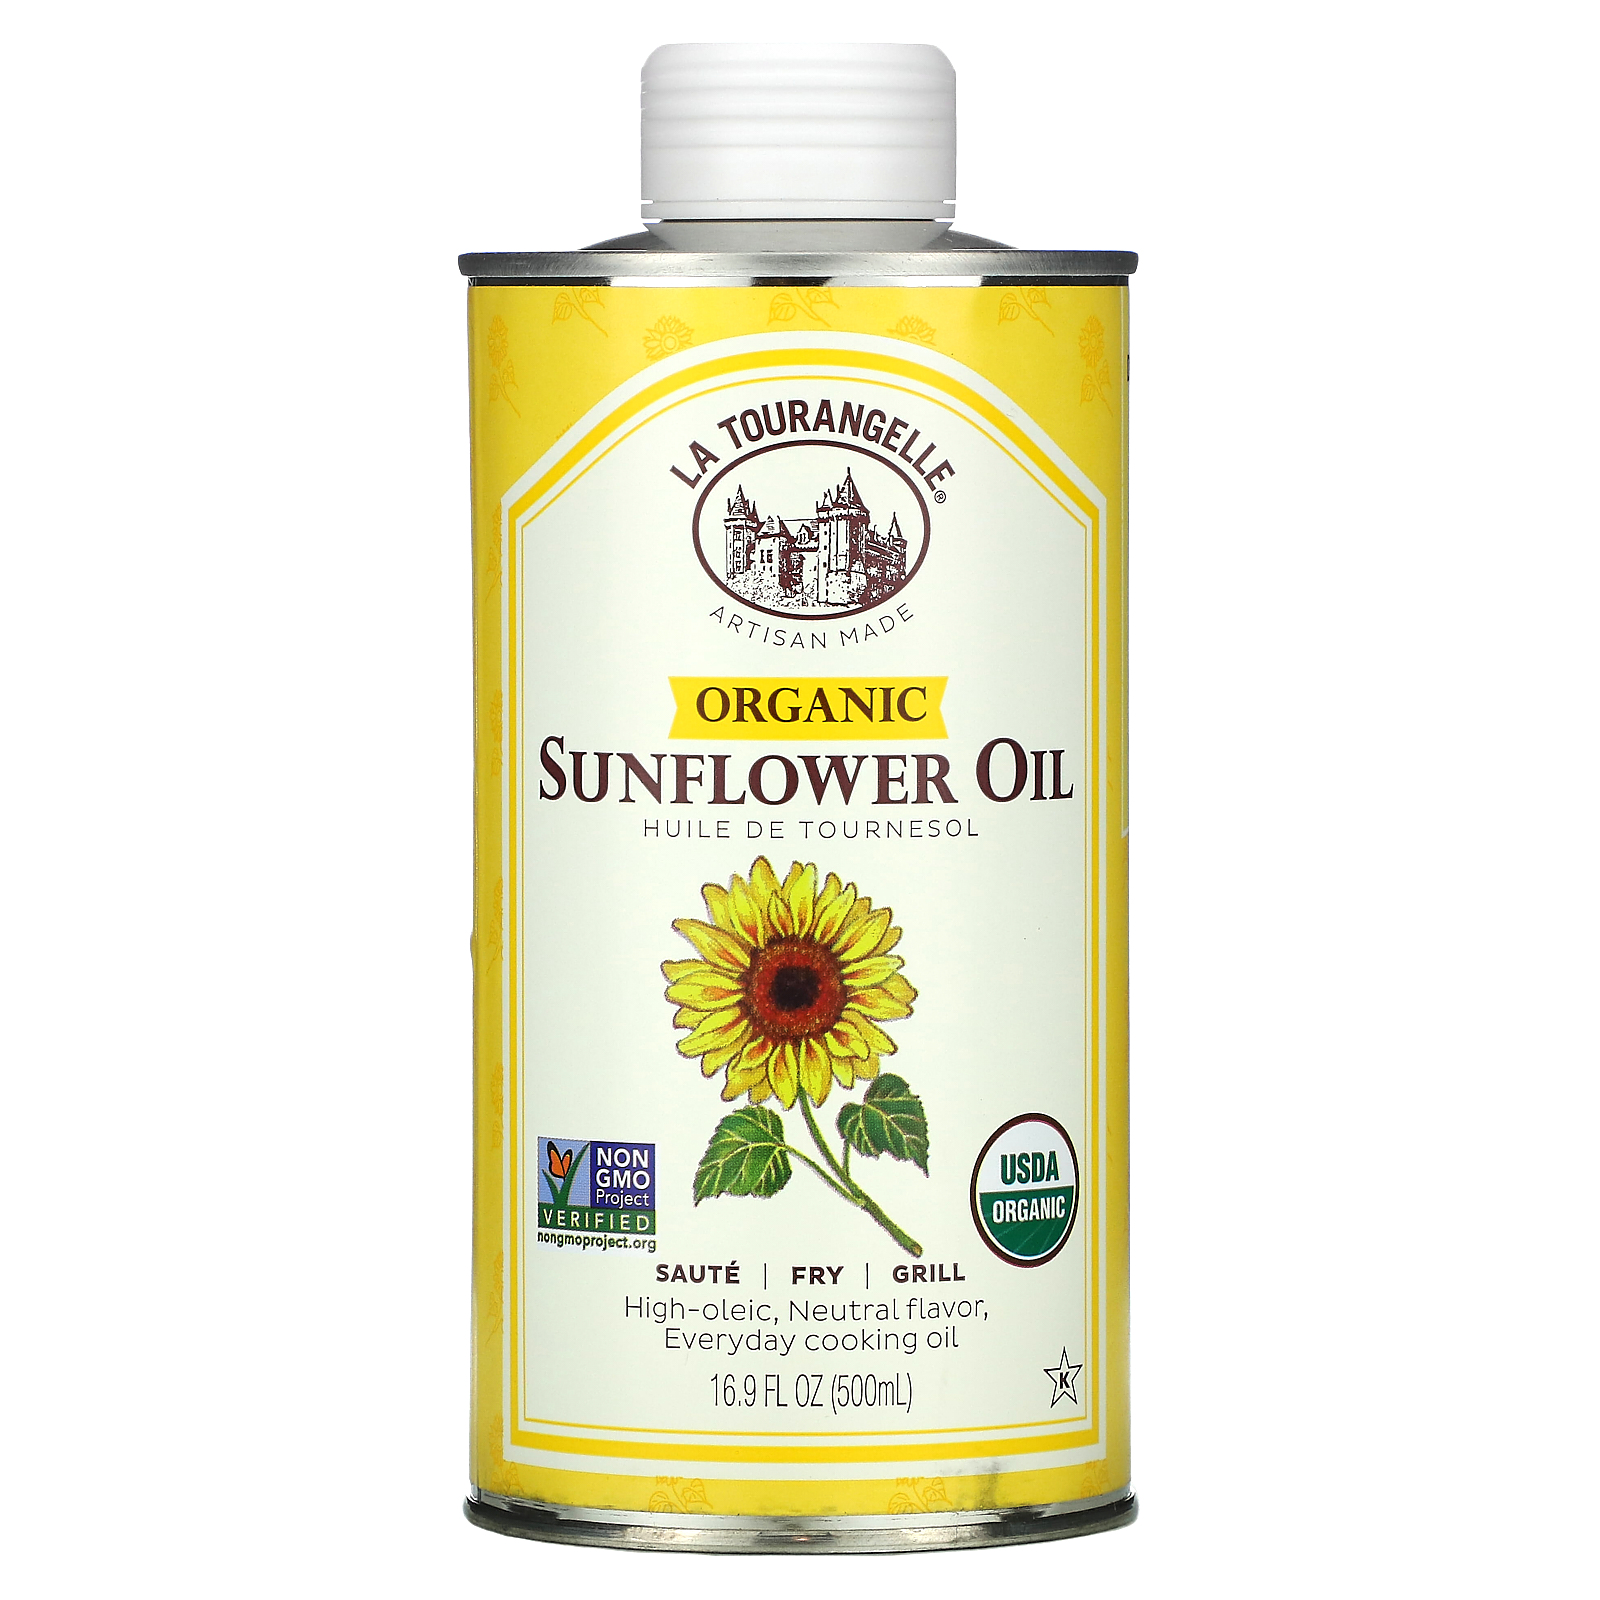 Подсолнечное масло как смазка. High oleic Sunflower Oil. Масло Органик. Подсолнечное масло Органик. Sunflower Oil with Sunflower.